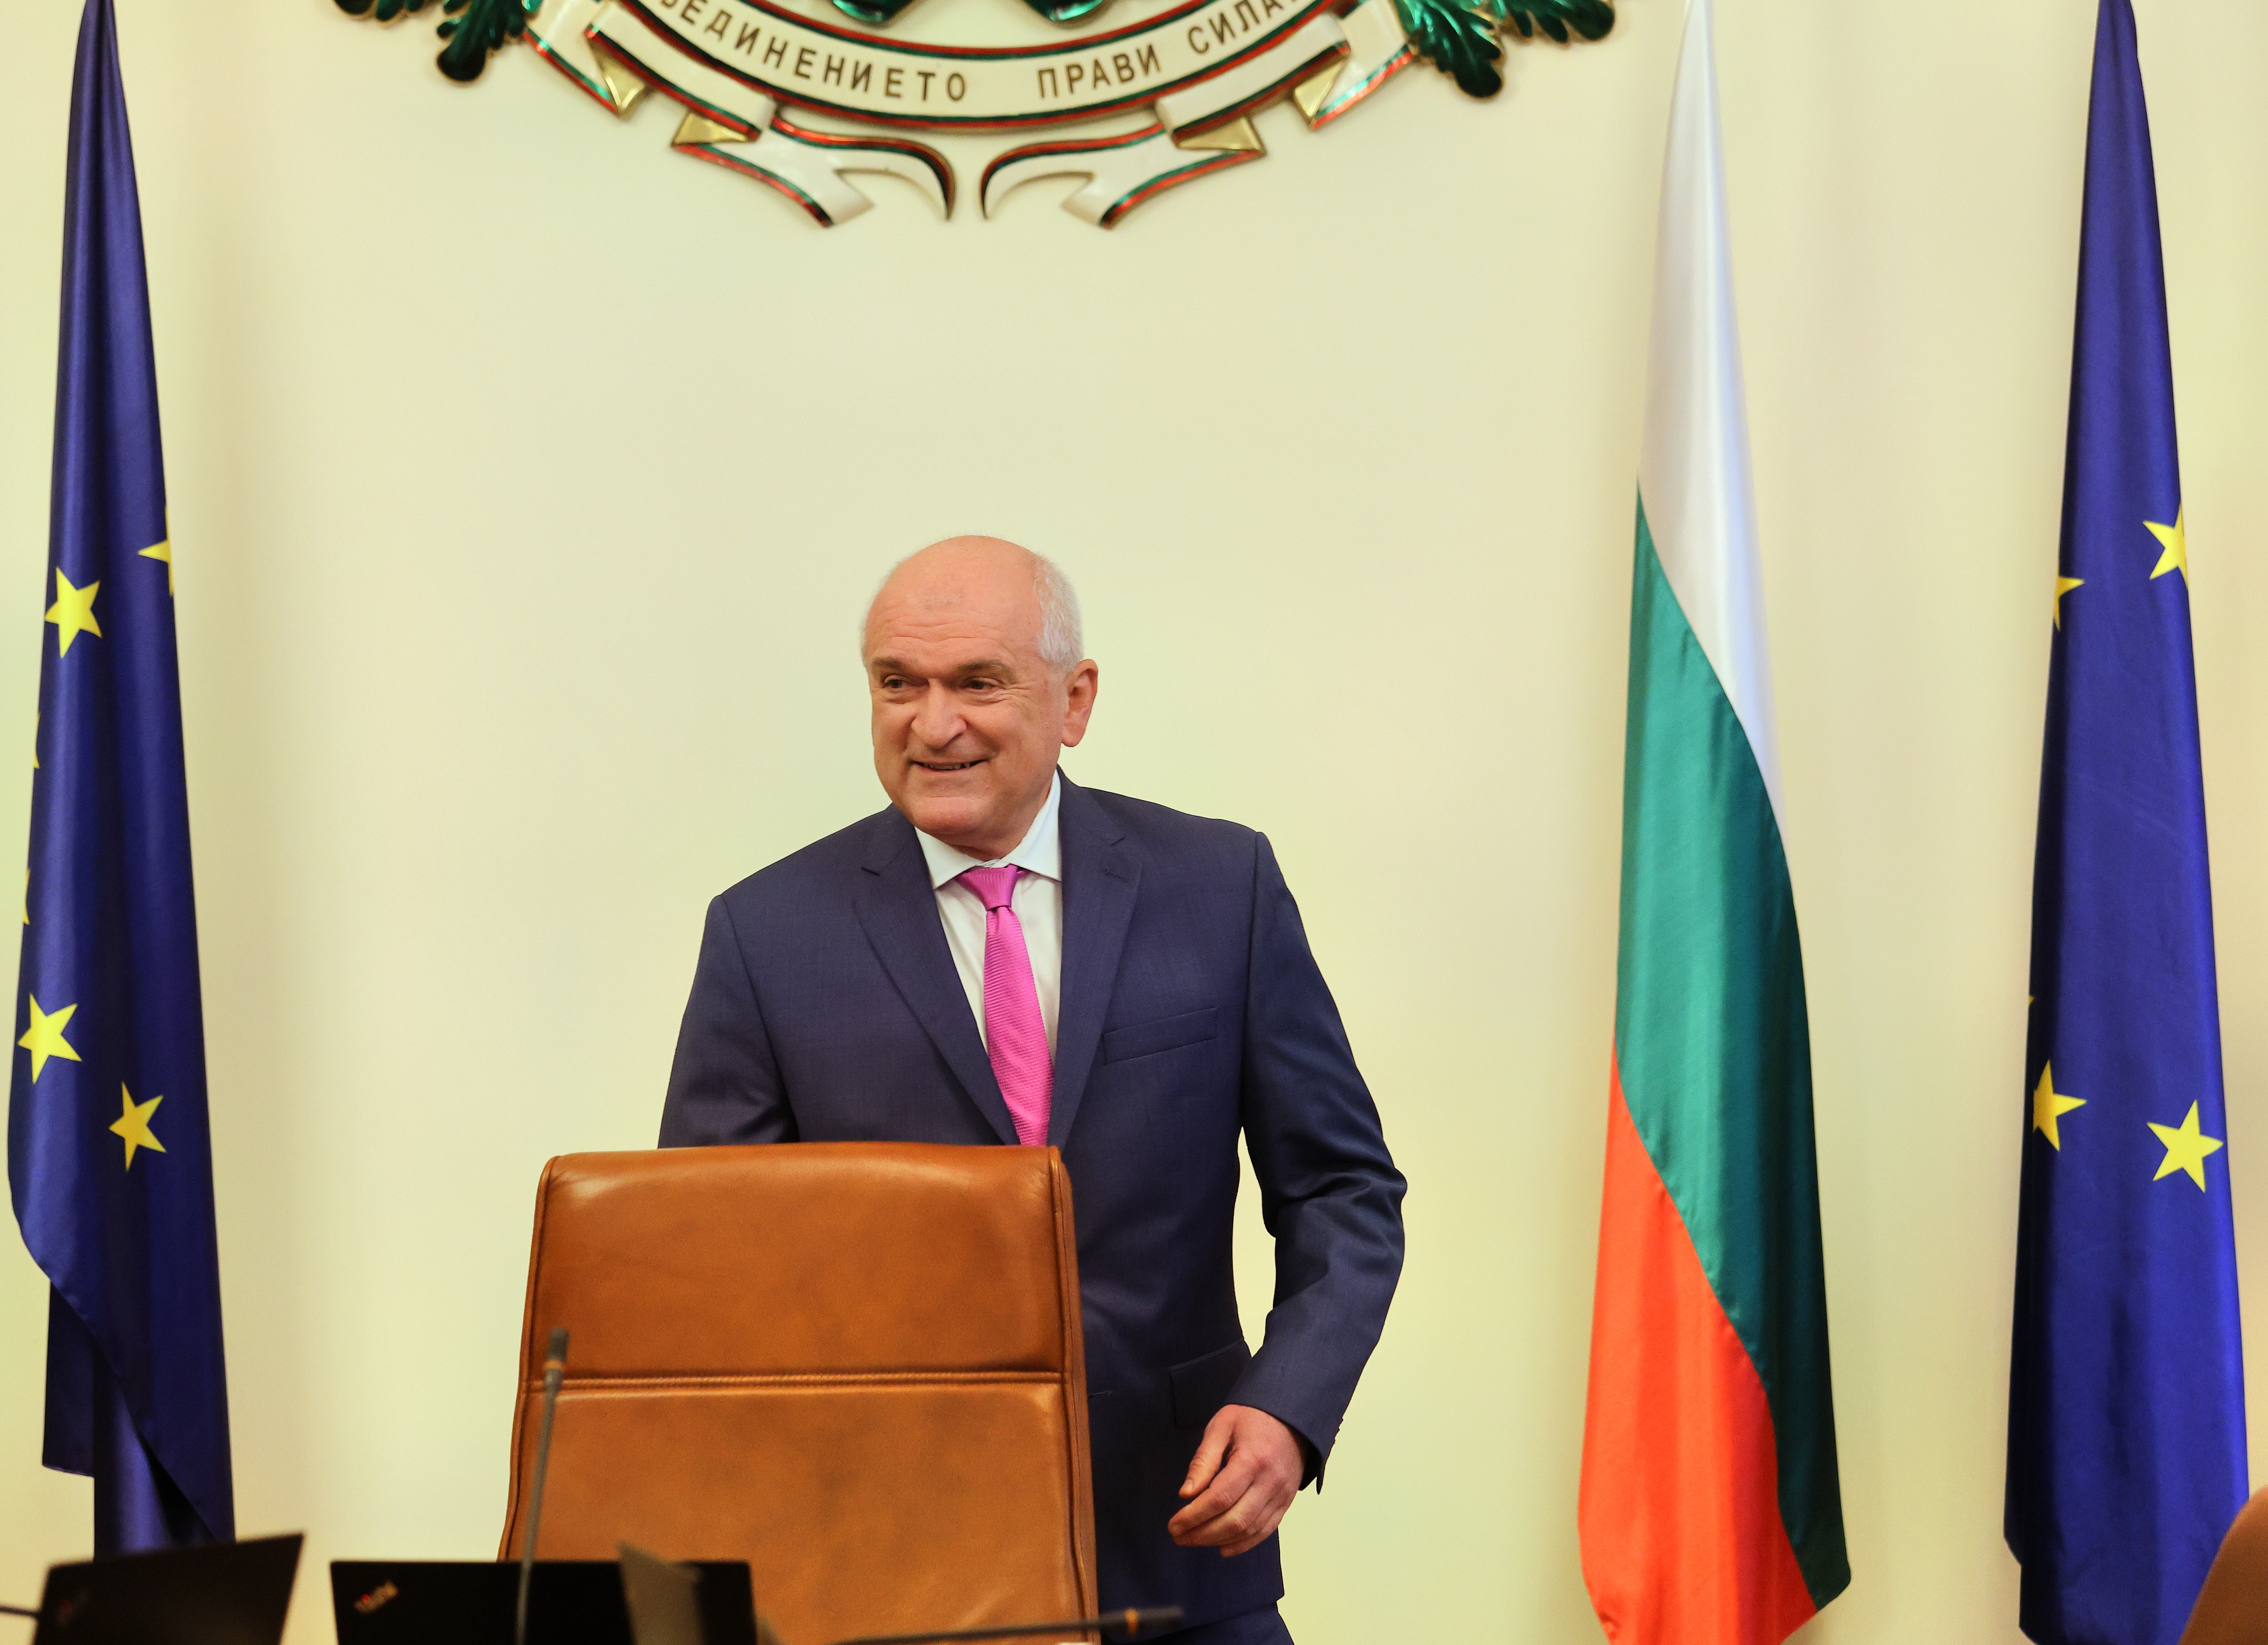 Уважаеми учители, преподаватели, ученици,Скъпи просветители,Уважаеми българи, обърна се служебният премиер